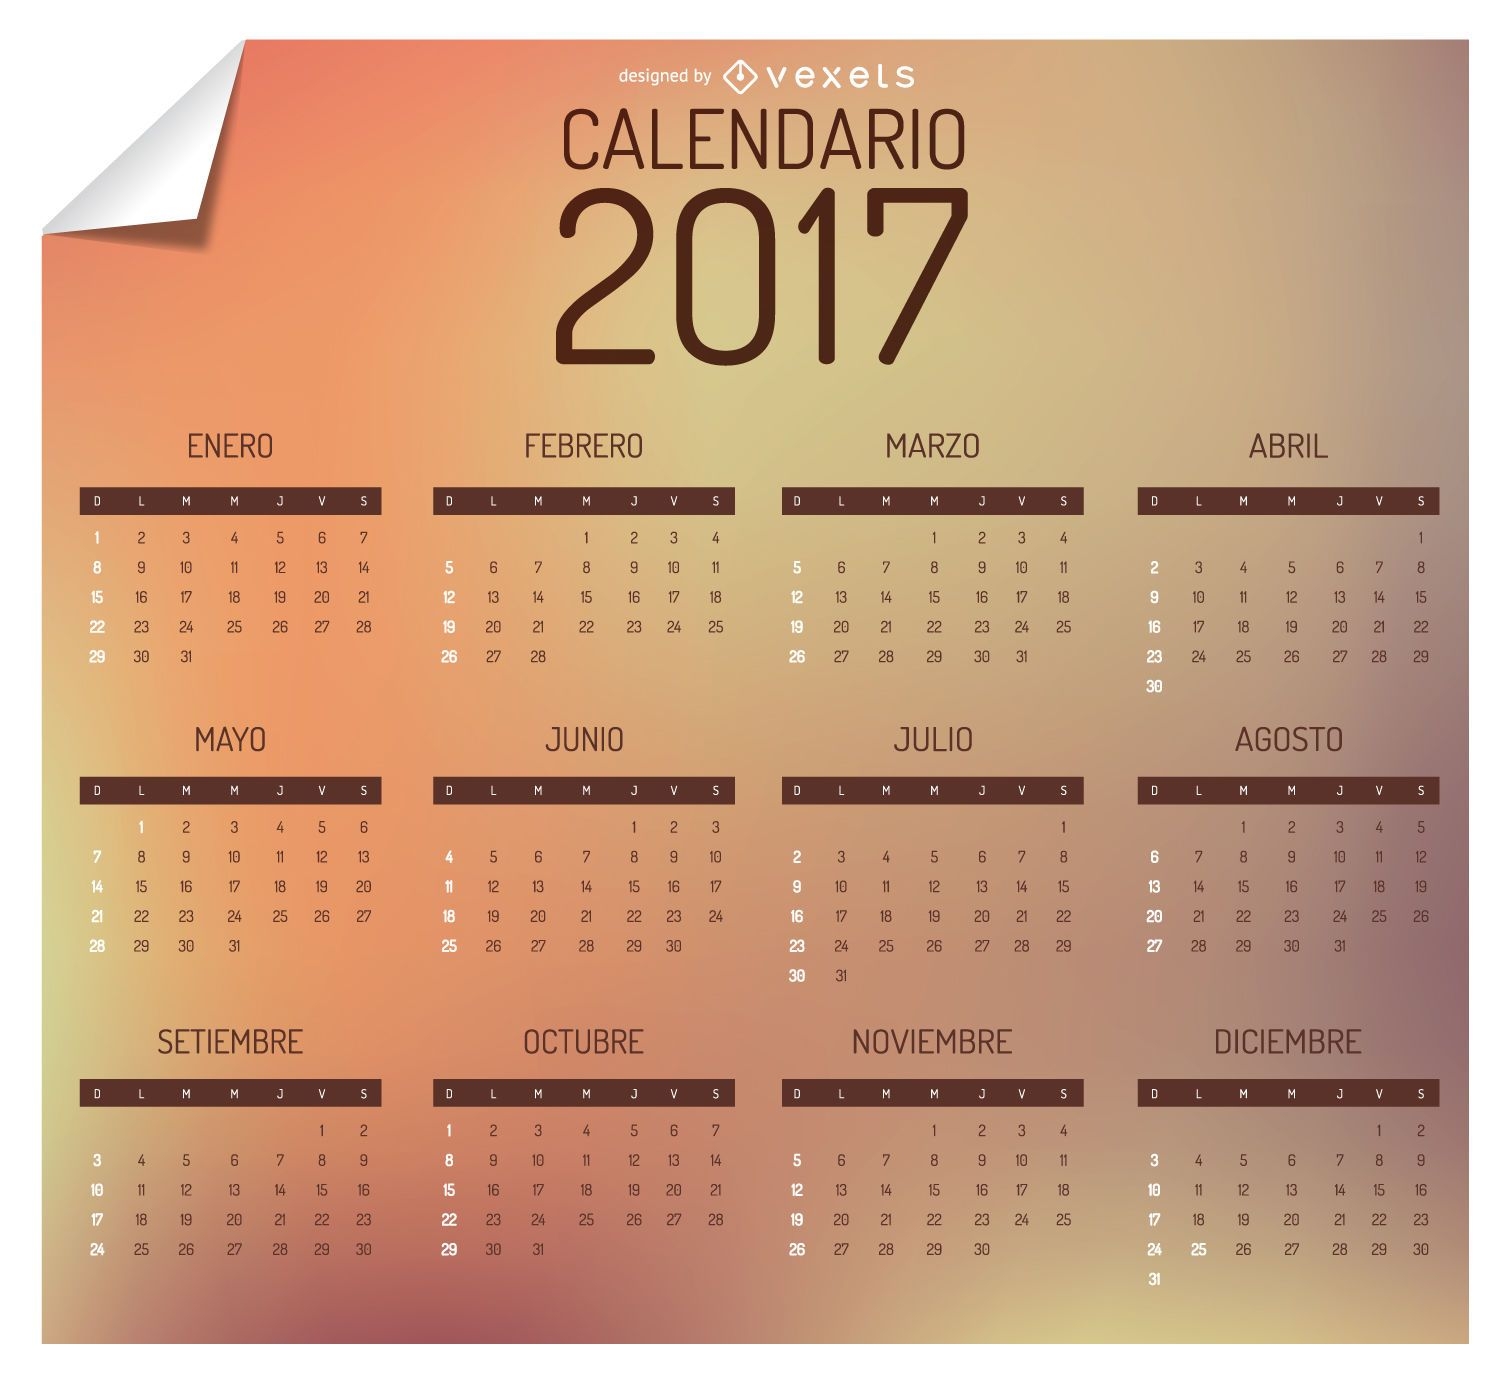 Kalender 2017 auf Spanisch